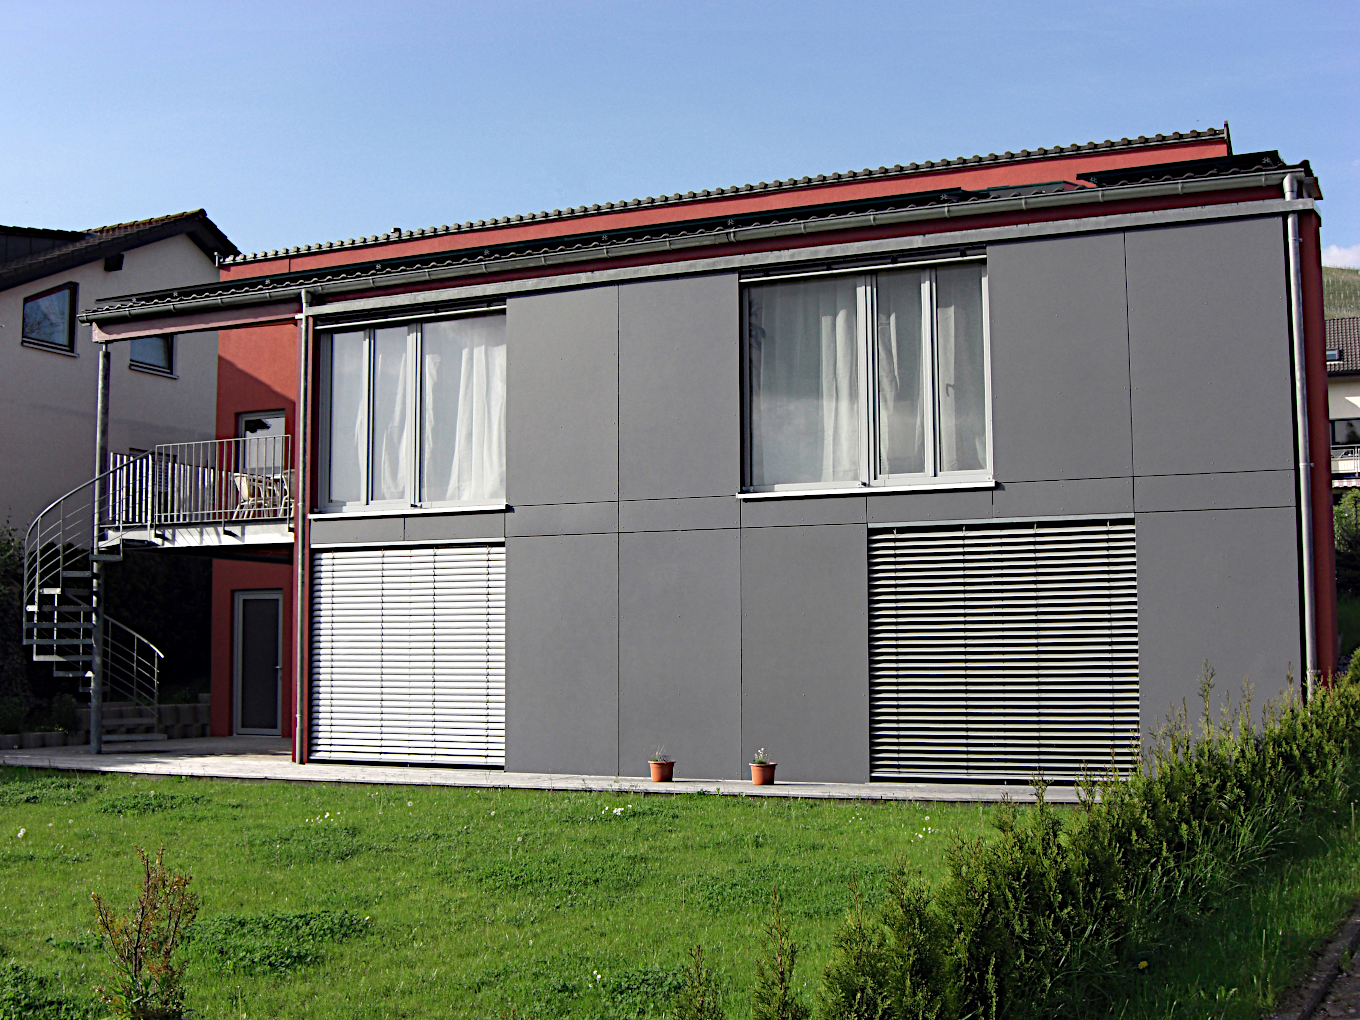 Bild zum Neubau Wohnhaus Auweg in Erlenbach bei HN